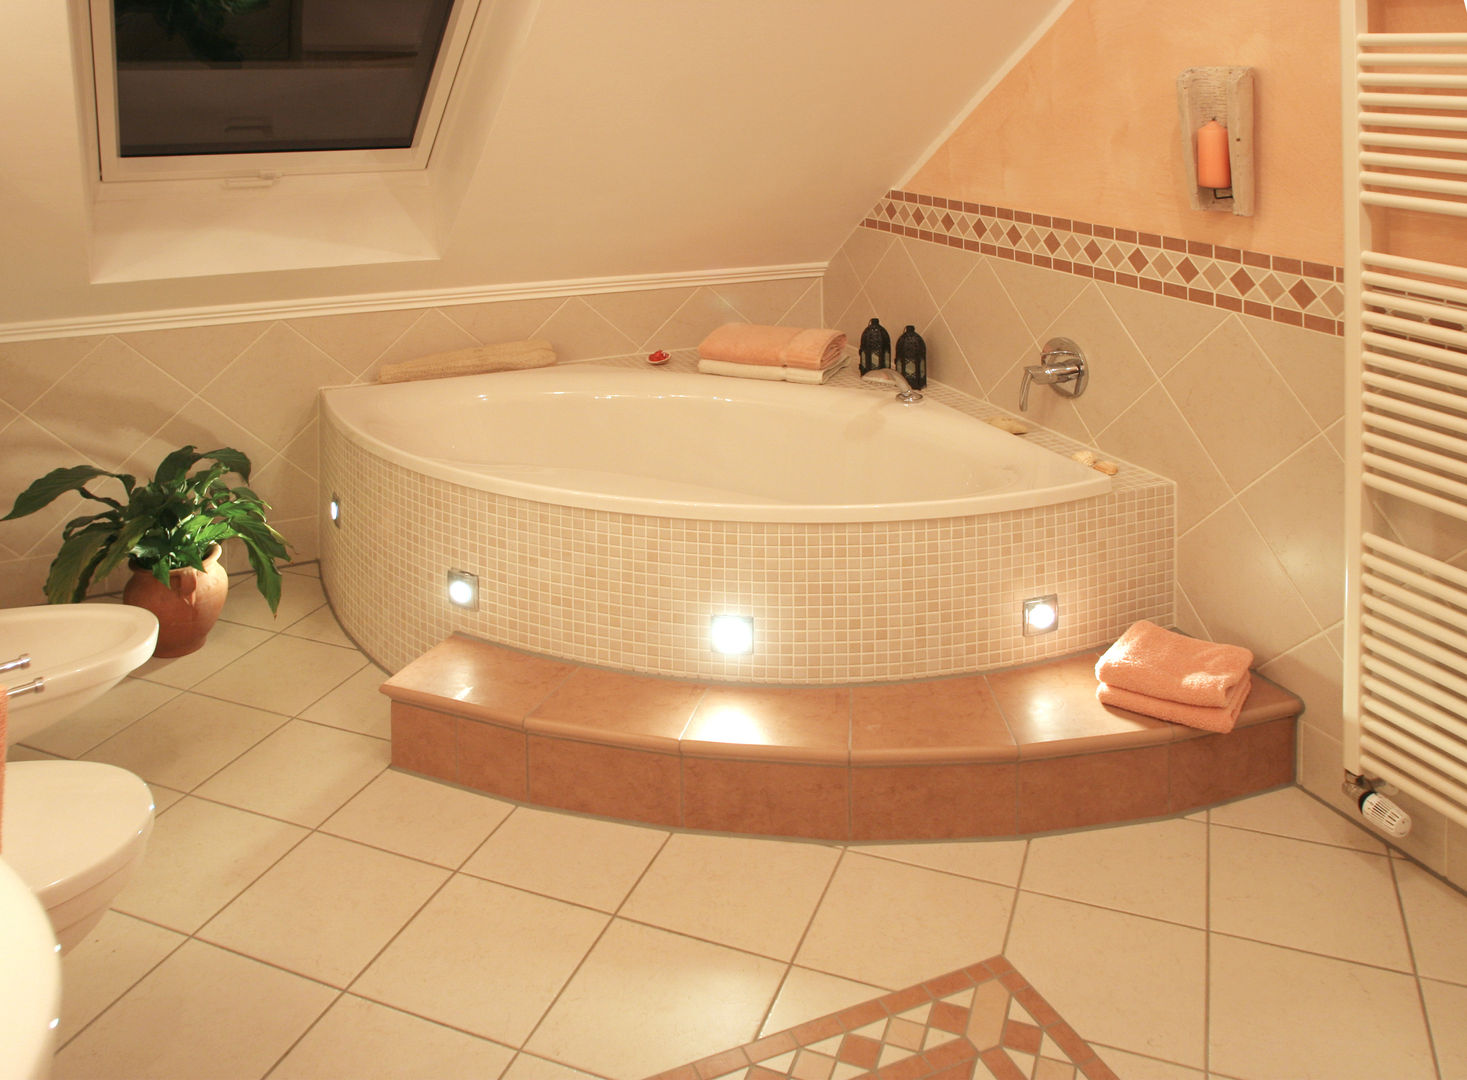 Badezimmer, Fliesen Hiersemann Fliesen Hiersemann Mediterranean style bathroom